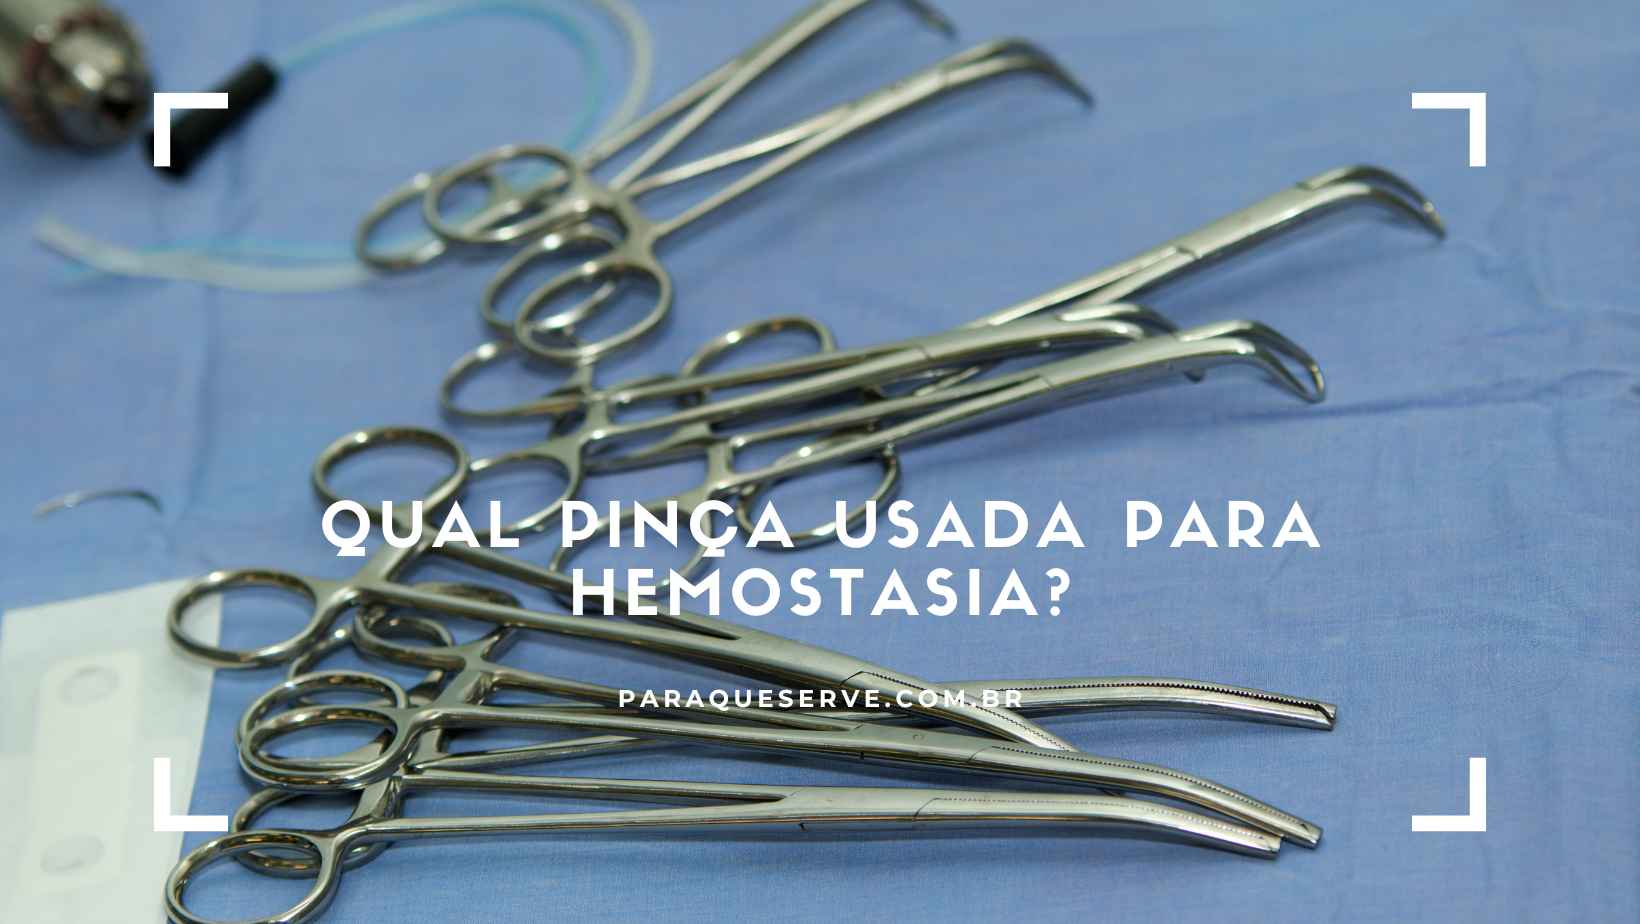 Qual pinça usada para hemostasia?